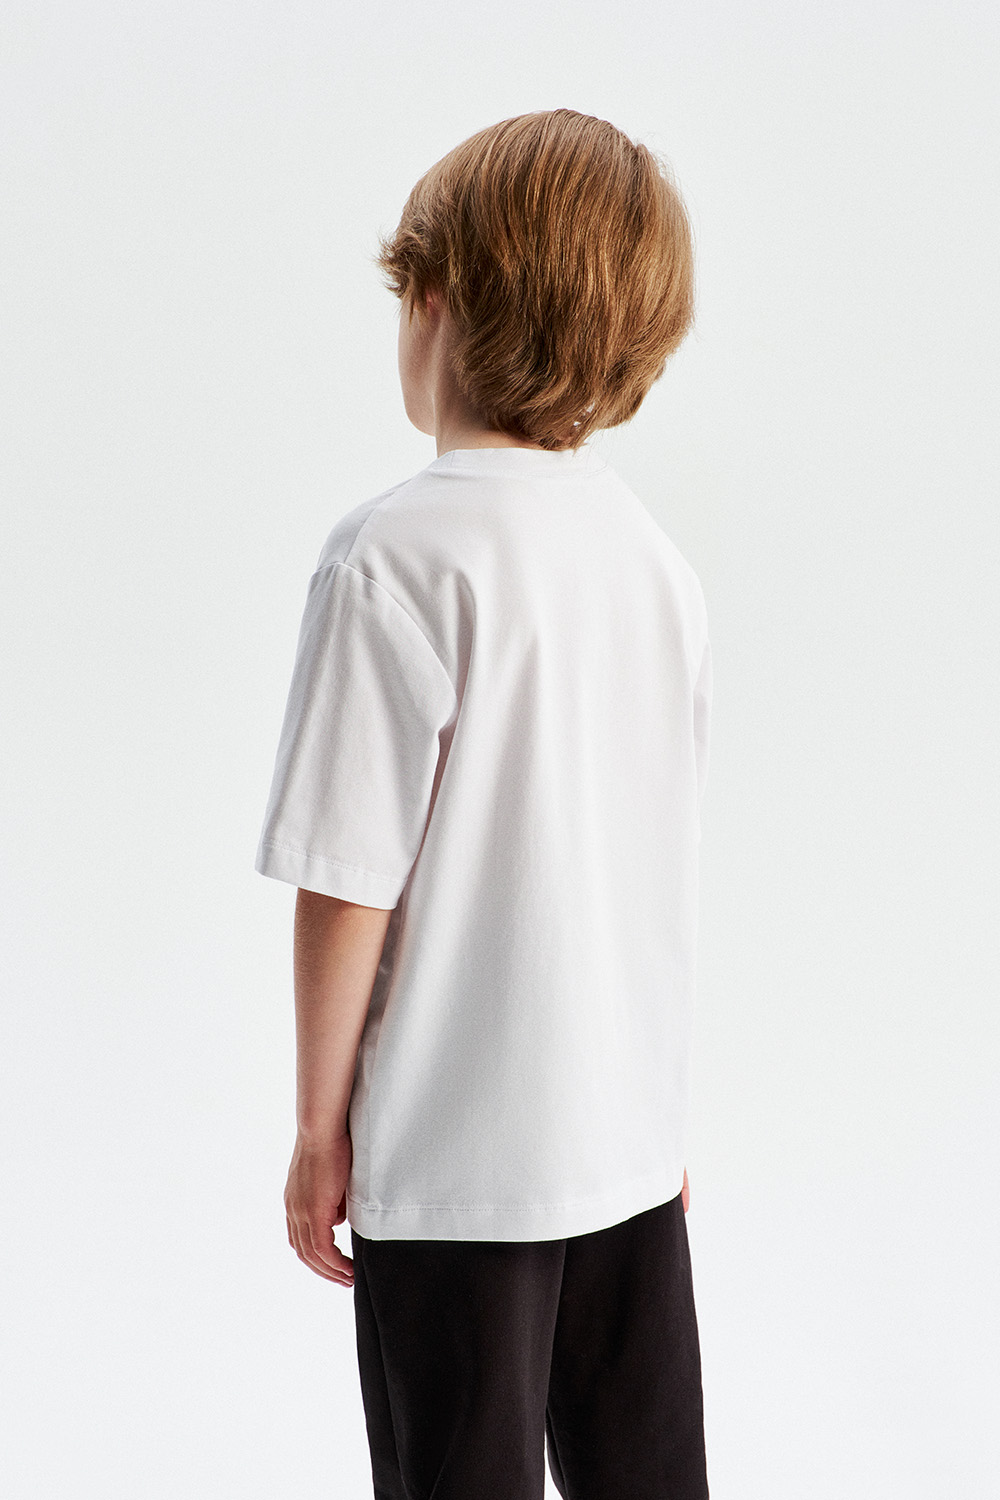 Хлопковая футболка с нагрудным карманом (SNFSB-428-18406-200) Silver spoon